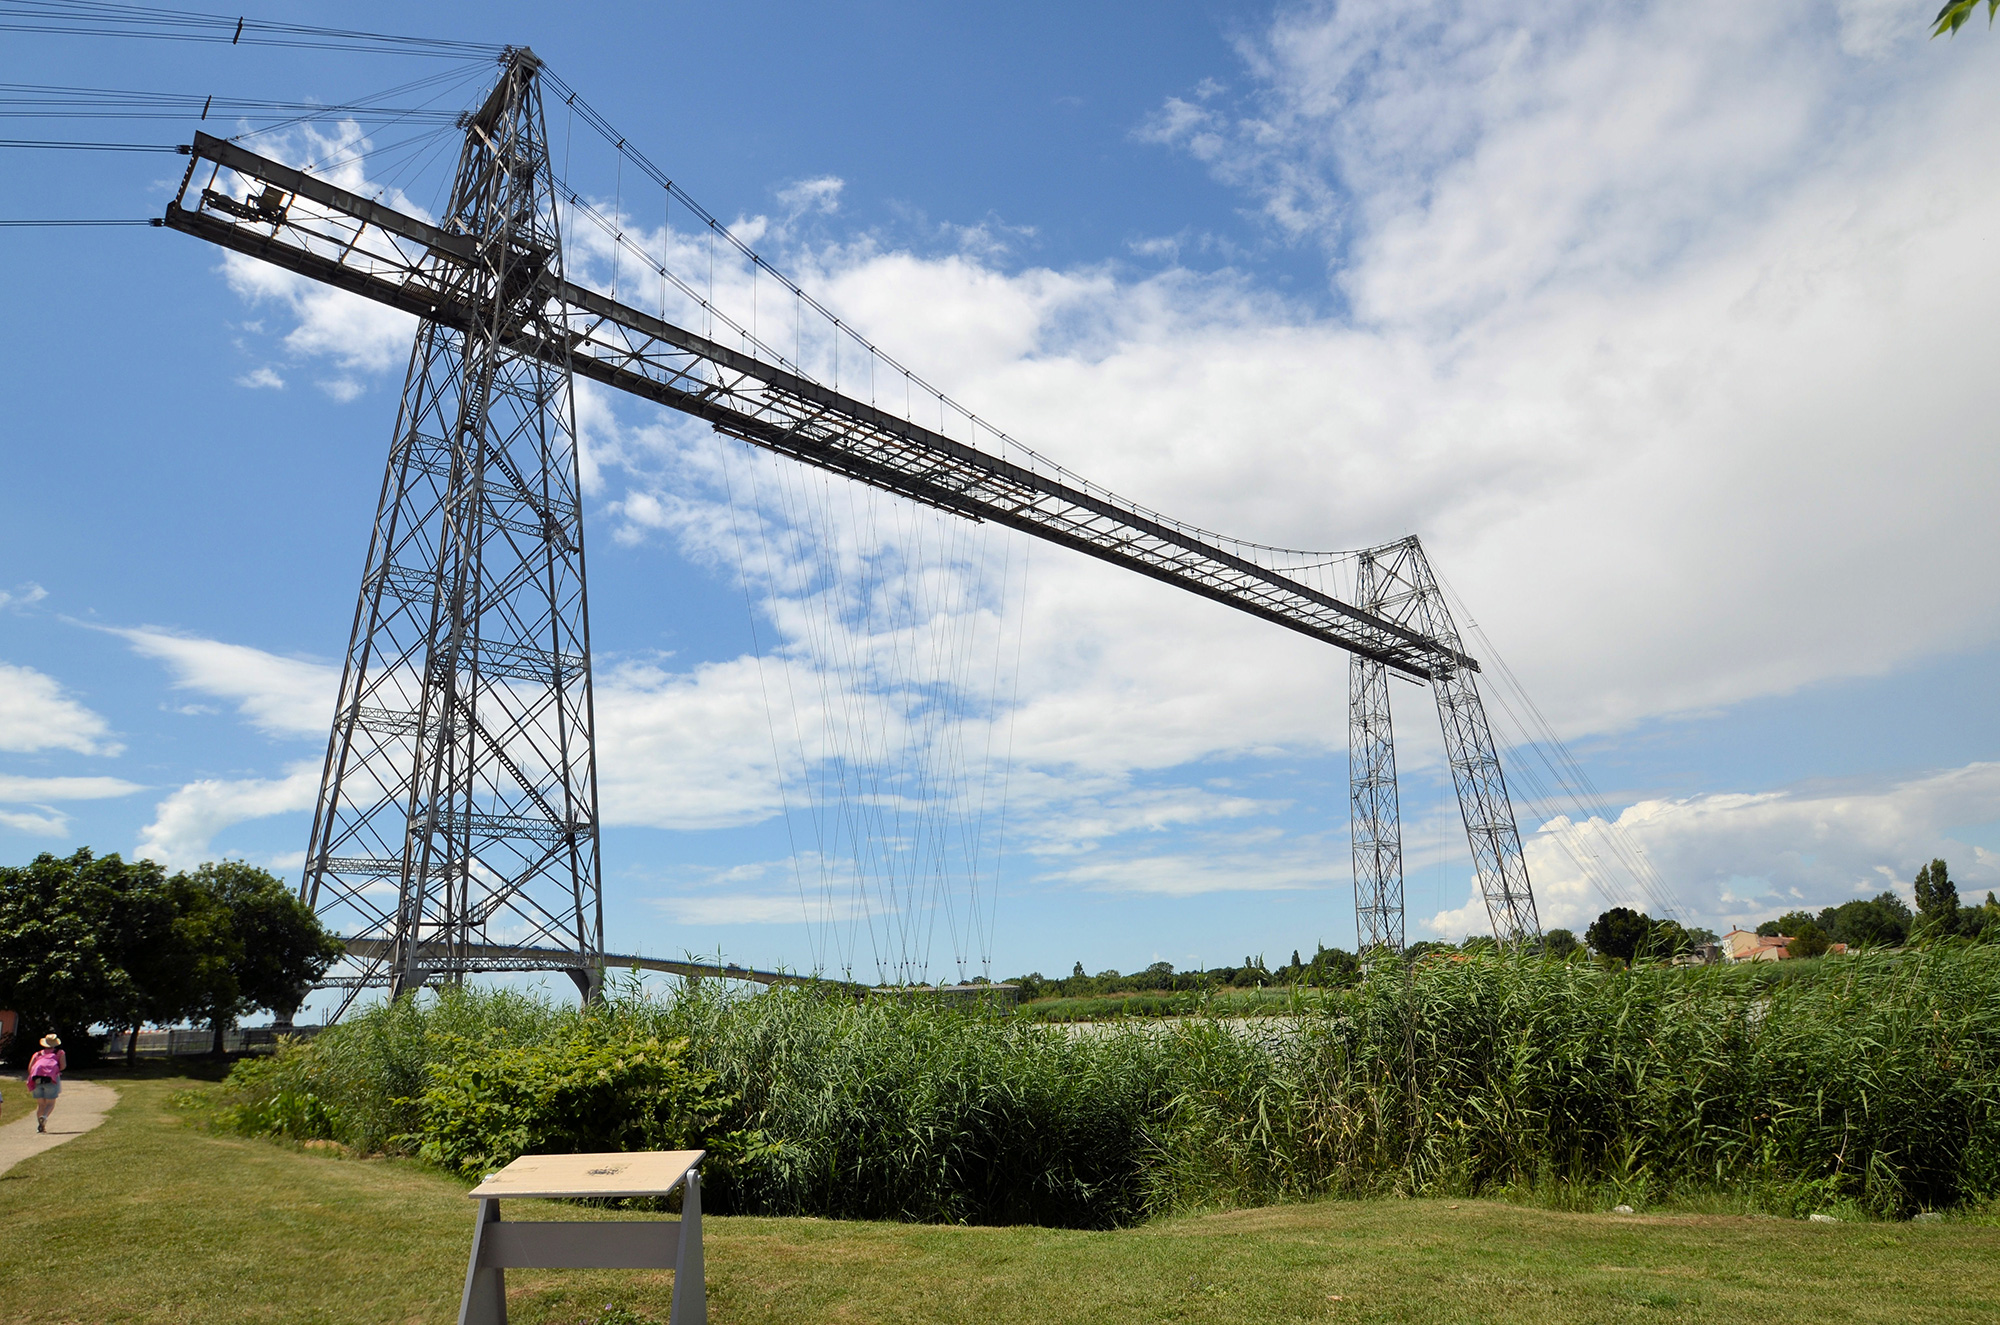 Le pont transbordeur de Rochefort. Ses deux pylones, sa passerelle suspendue. (routard.com)